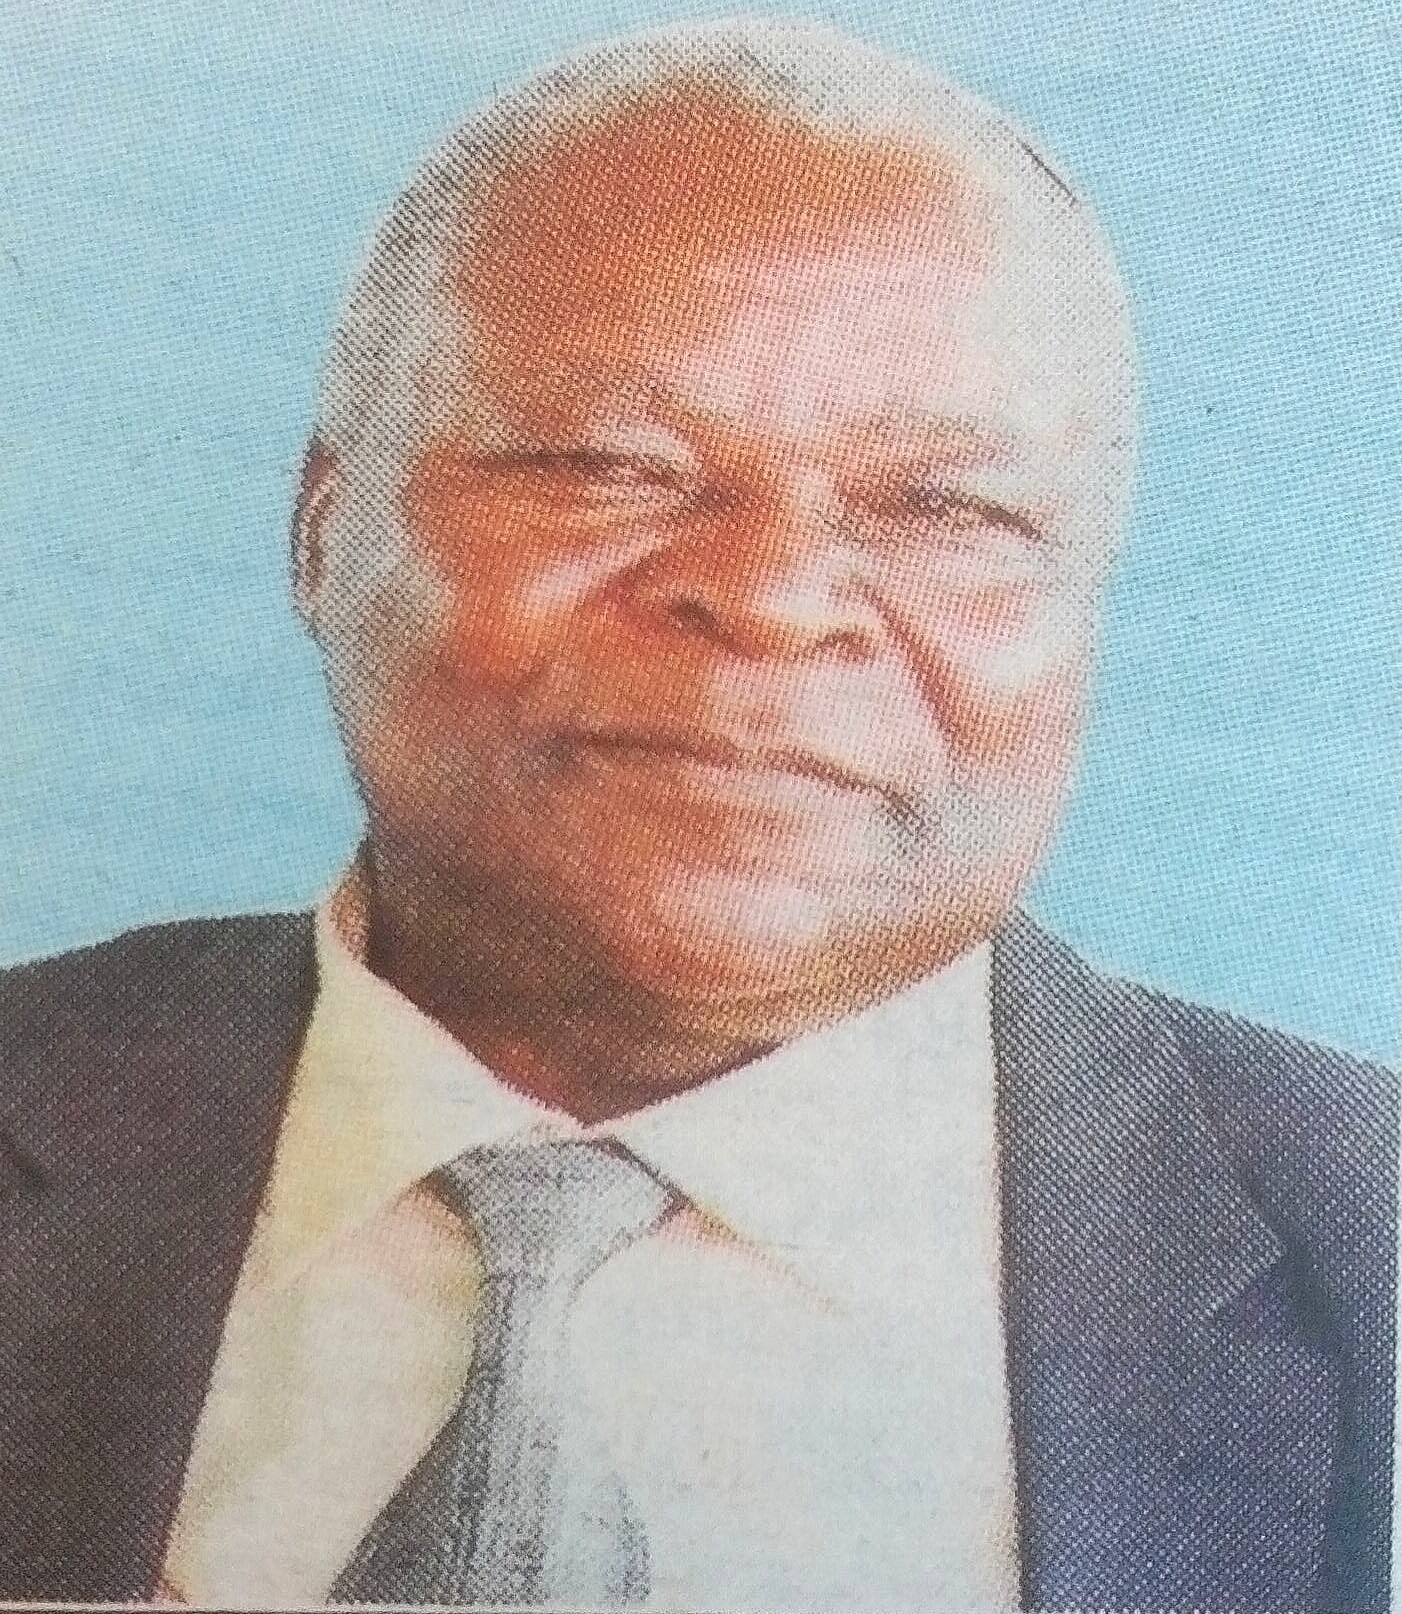 Obituary Image of Mzee Lawi Oloo Adongo